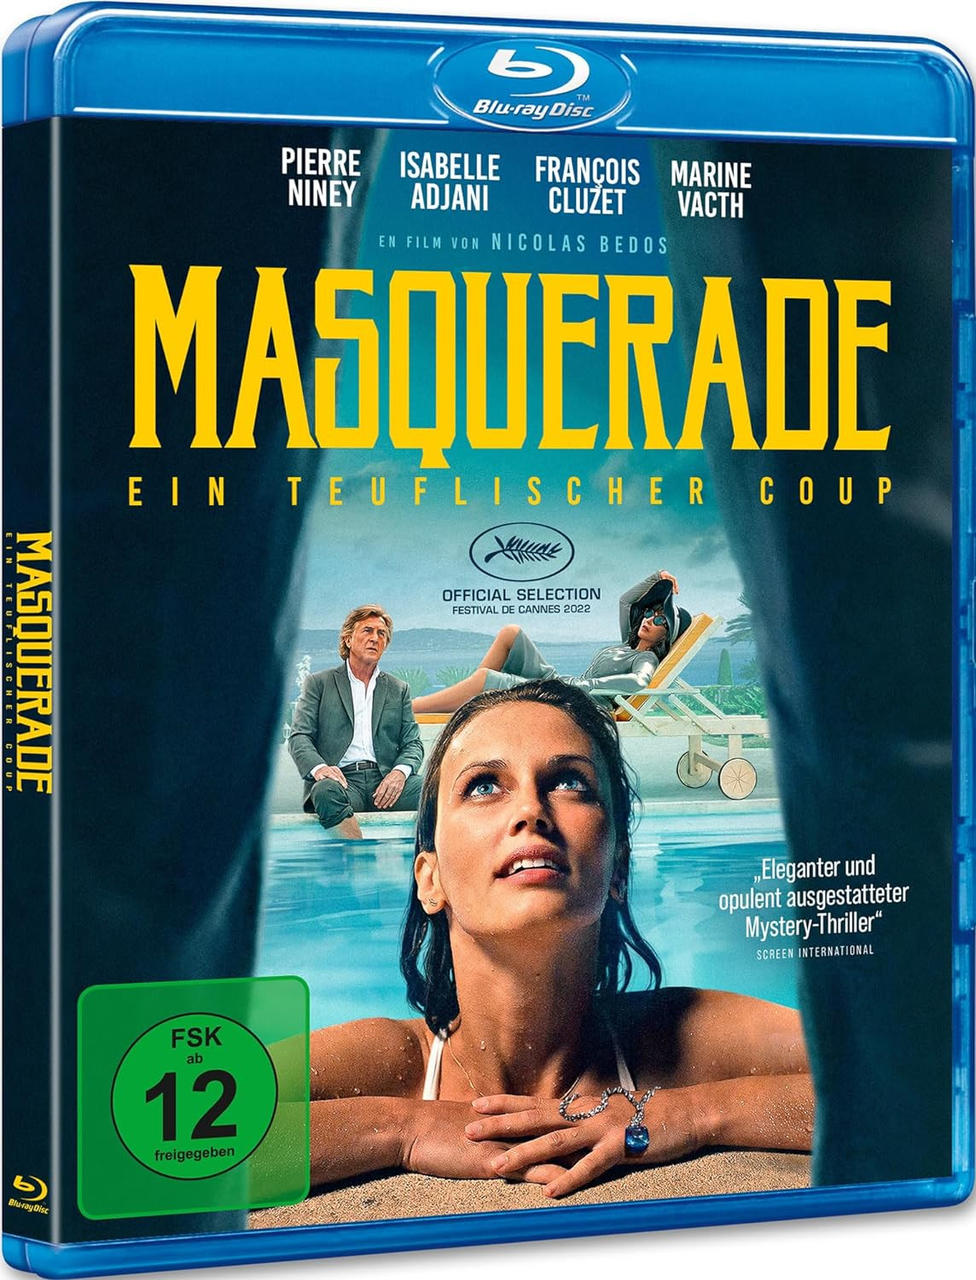 Coup Blu-ray - Masquerade Ein teuflischer